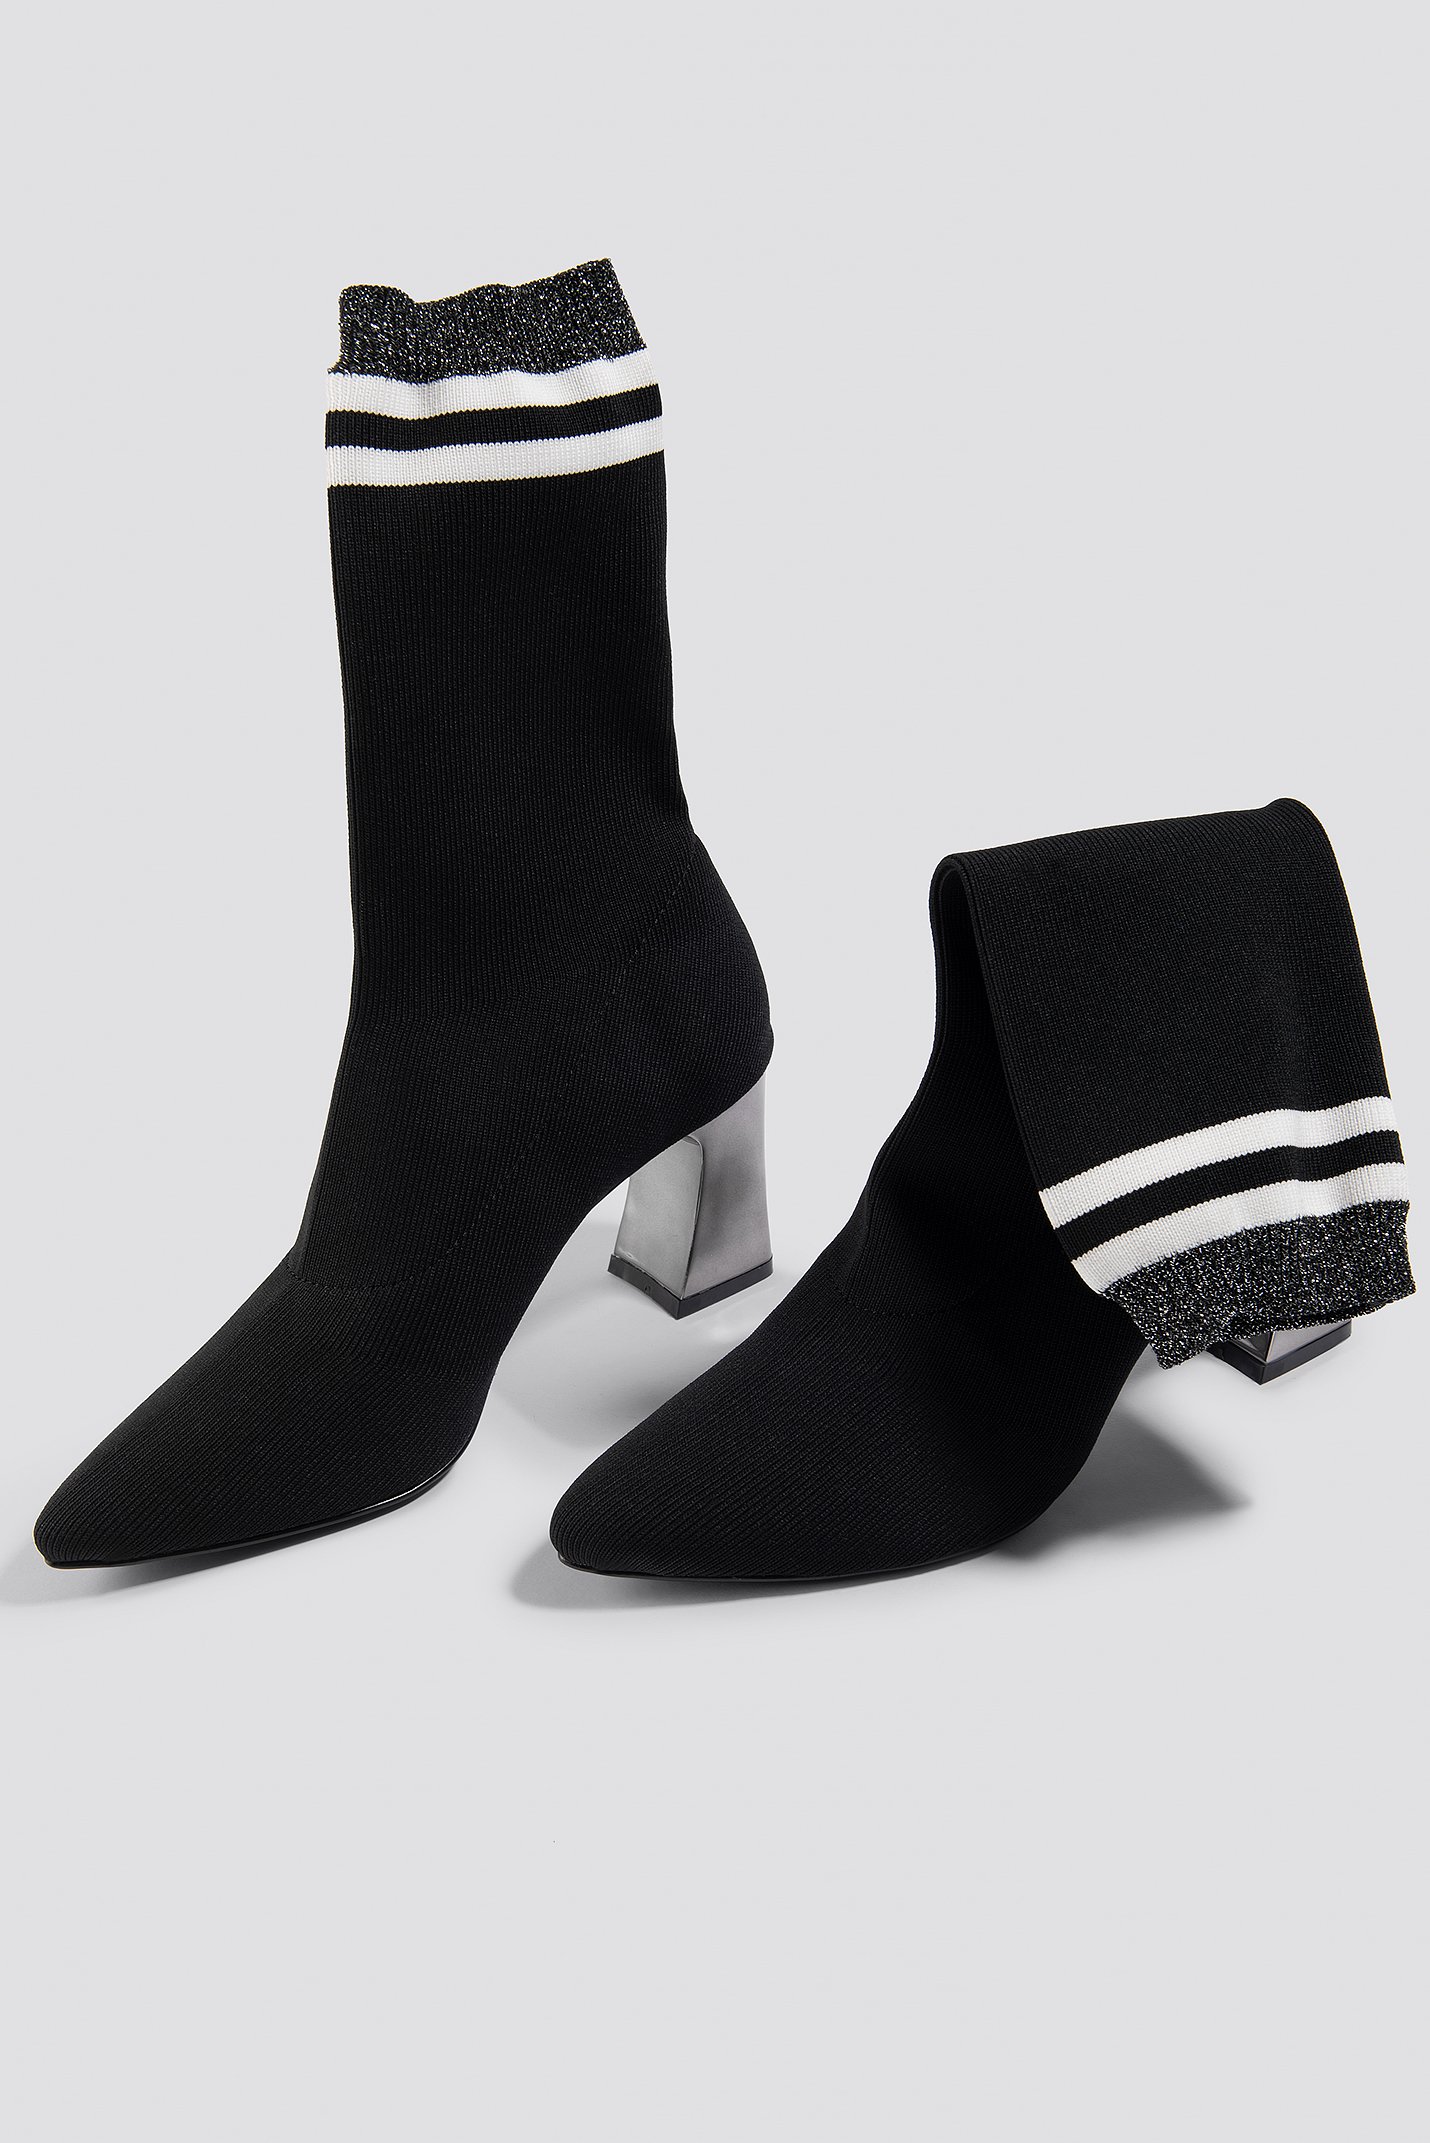 Striped Metallic Heel Sock Boots Black | na-kd.com - 1430 x 2143 jpeg 1385kB